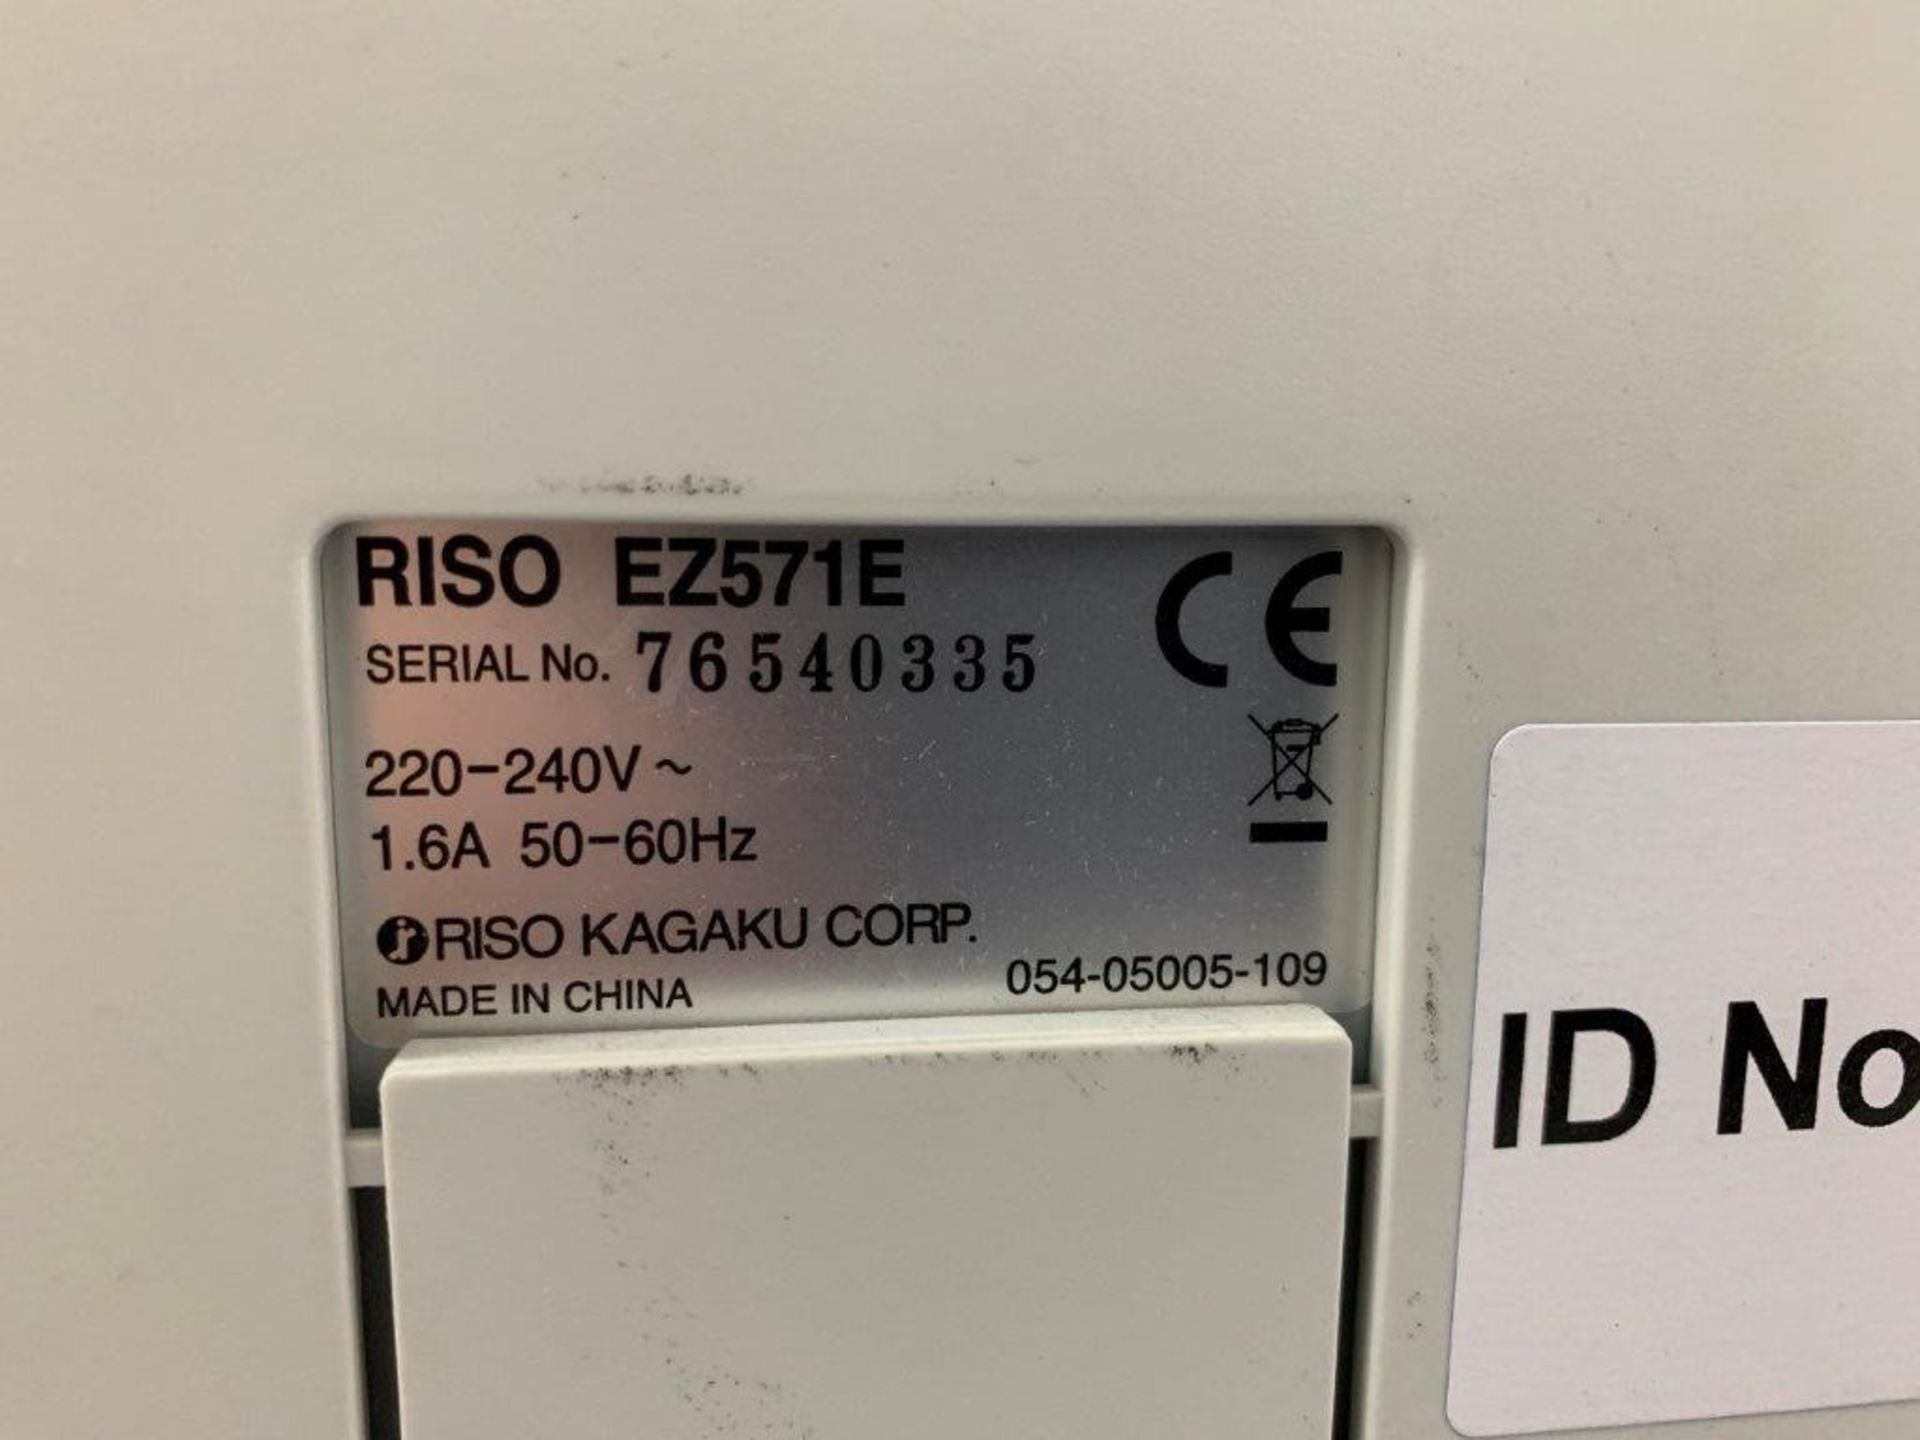 Risograph Riso EZ571E Digital Duplicator - Image 2 of 2